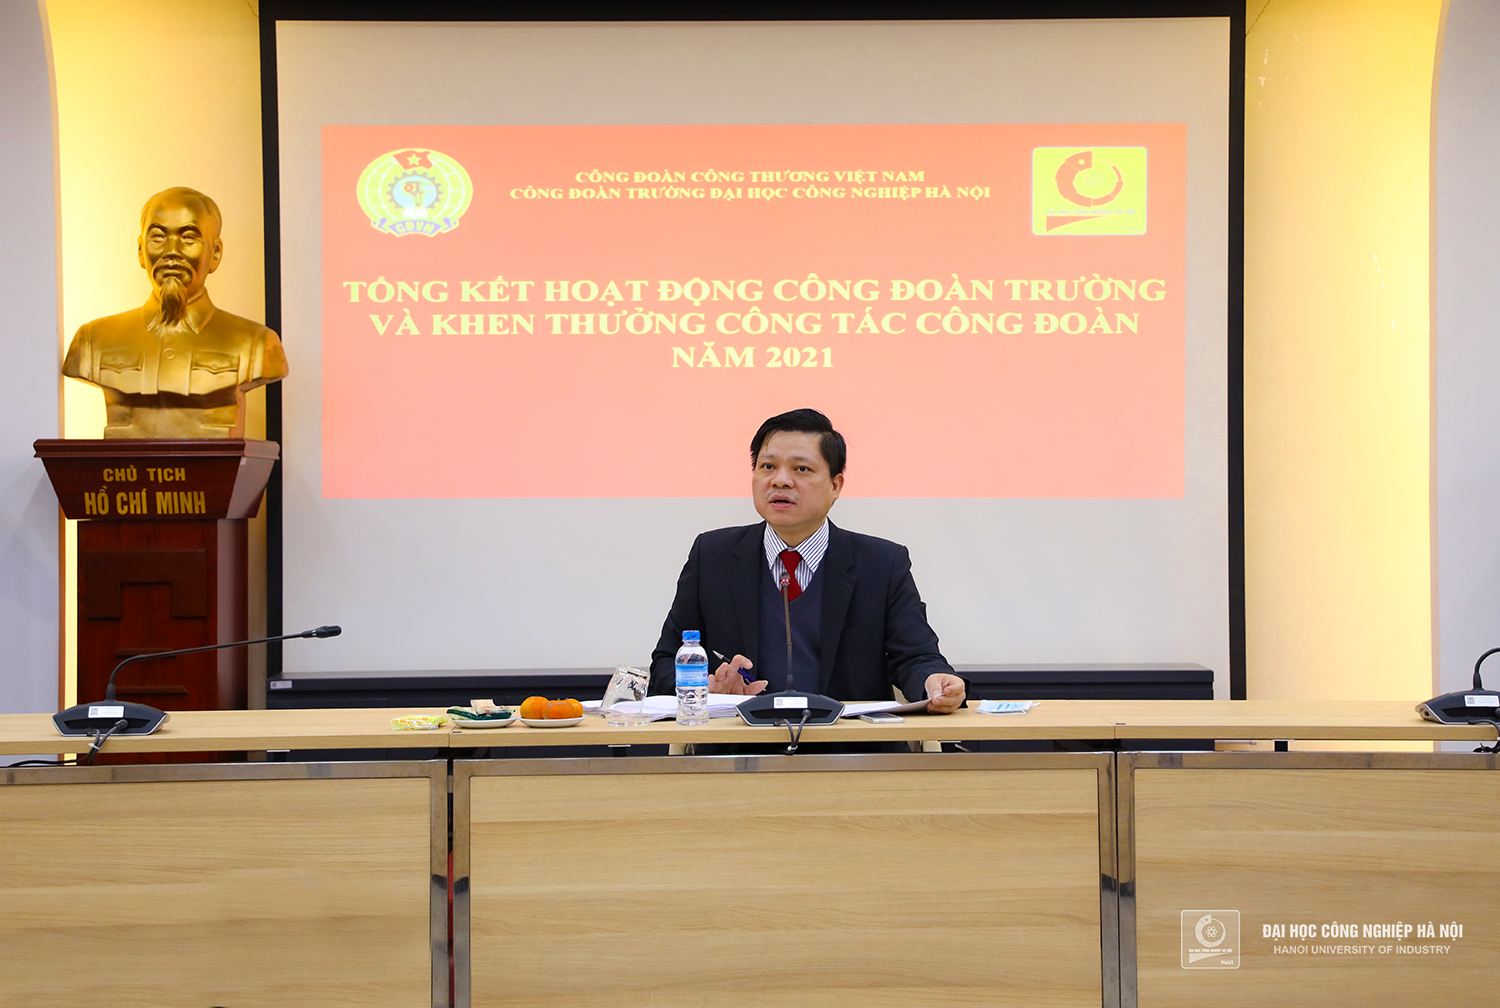 PGS.TS. Phạm Văn Đông - Chủ tịch Công đoàn Trường trình bày Báo cáo tổng kết công tác công đoàn năm 2021